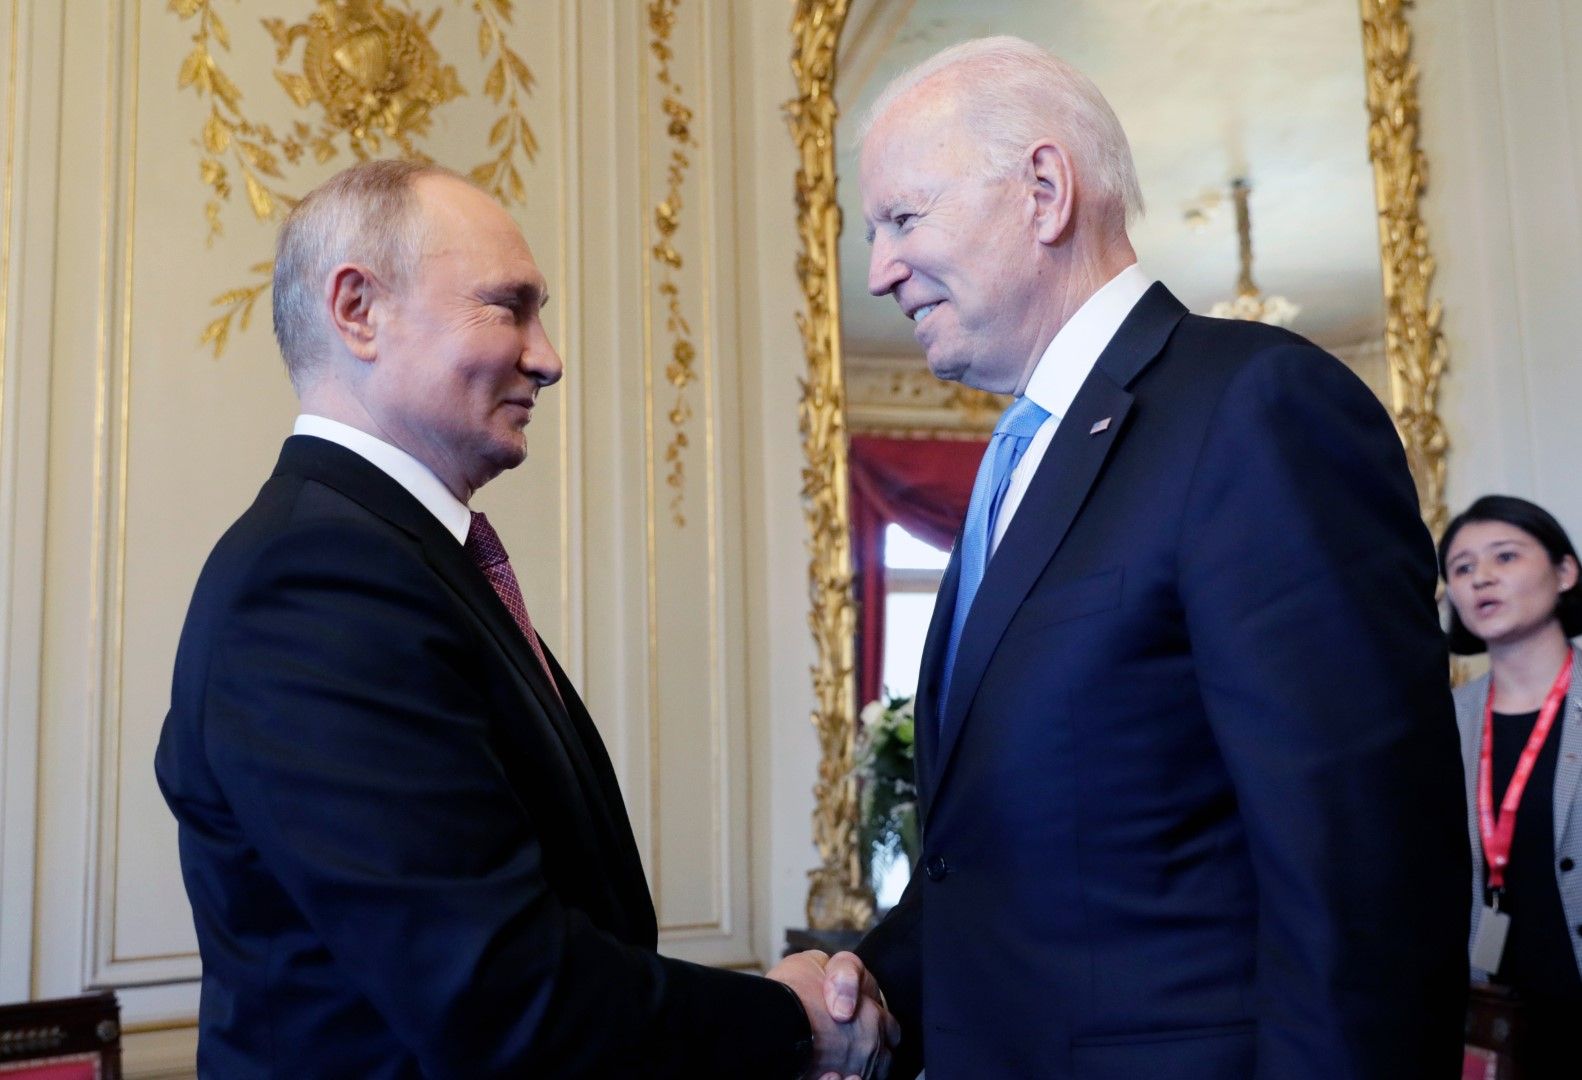 Пробивът стана възможен след договореностите, постигнати от президентите Байдън и Путин на срещата им през юни